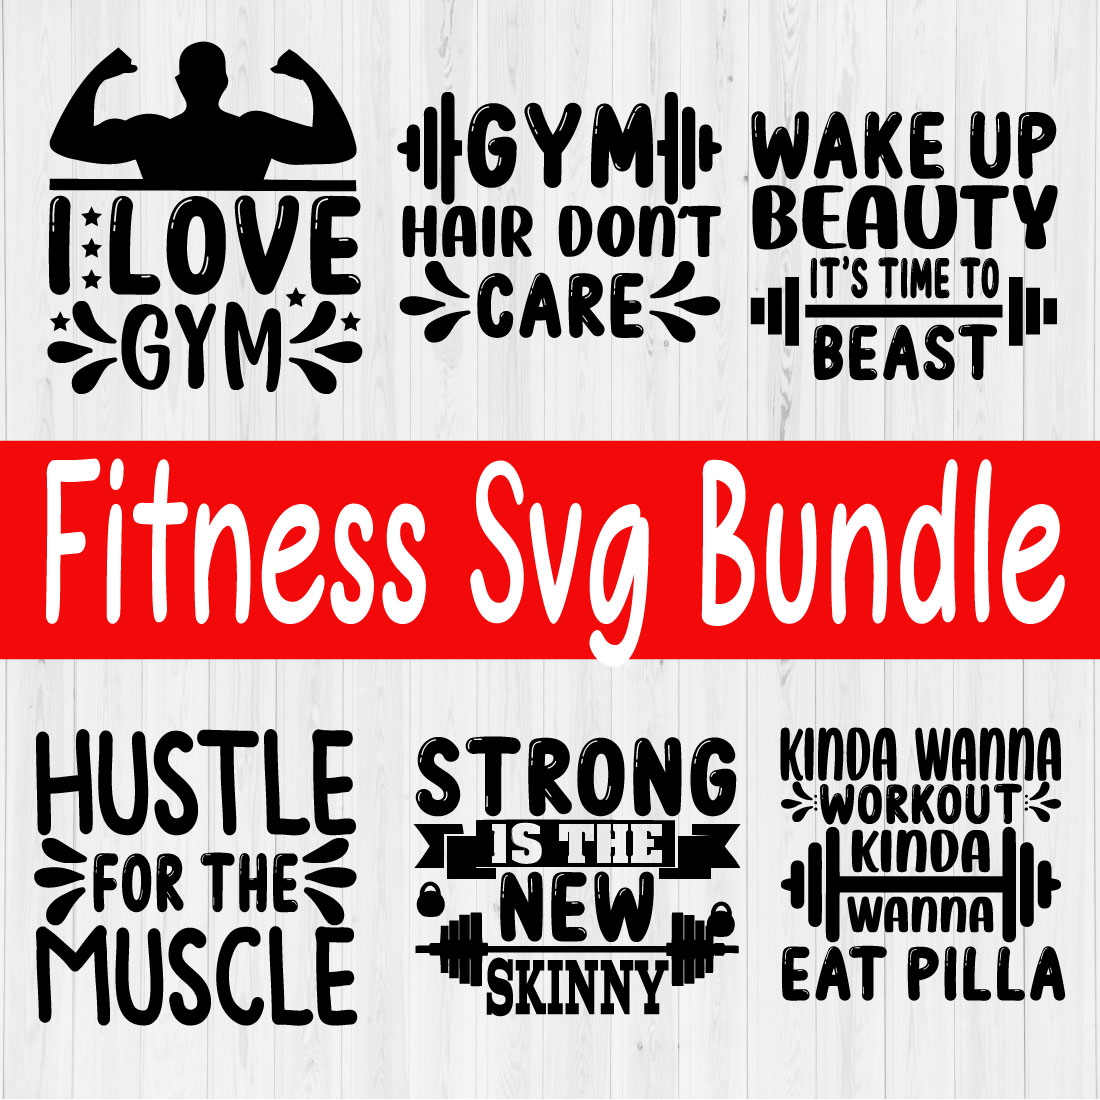 Fitness Svg Bundle Vol2 cover image.